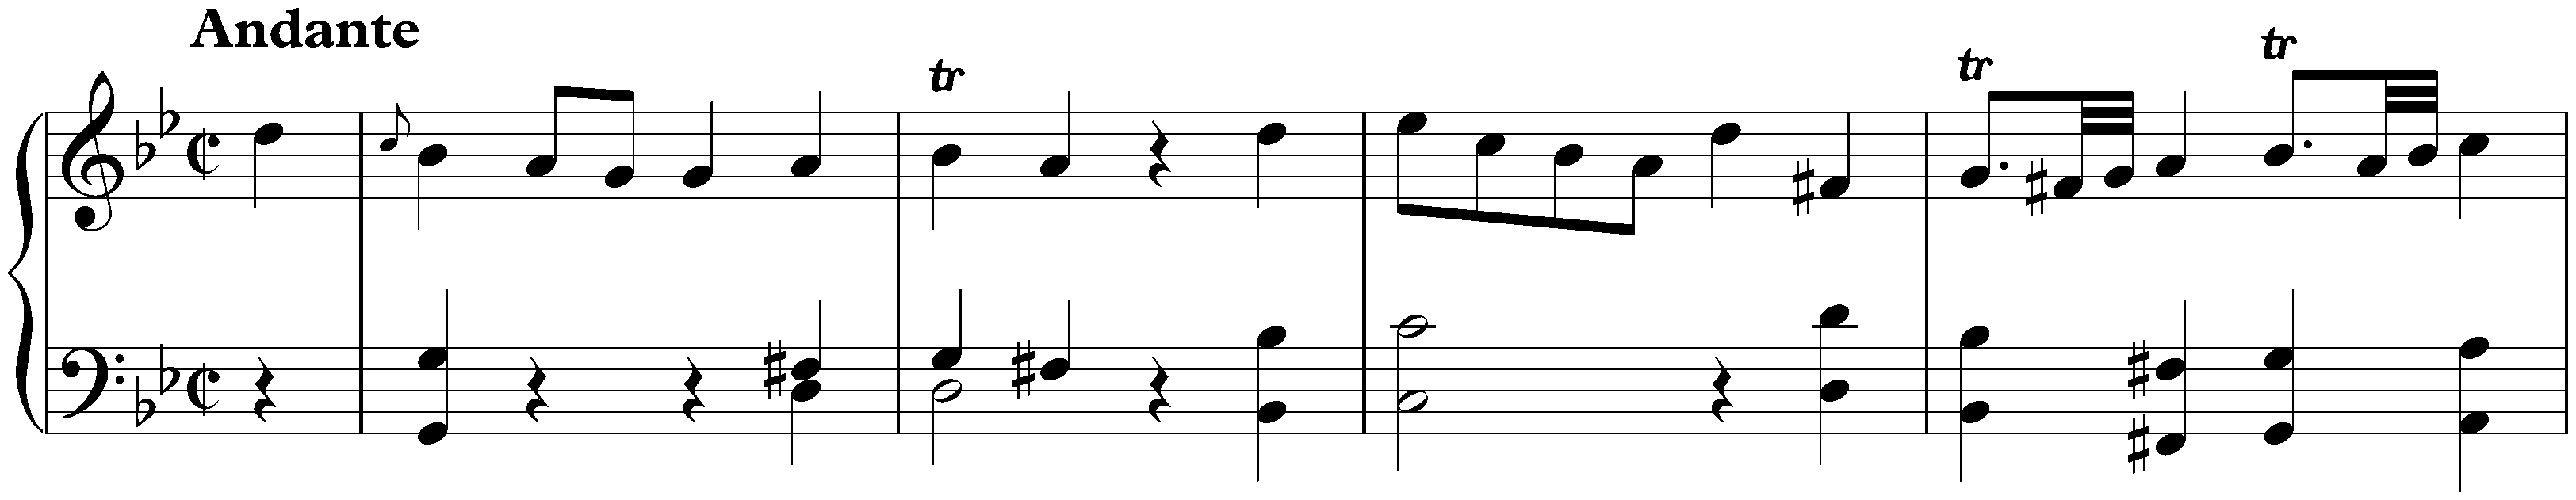 Sonata in G major, Hob. XVI:11; 2. Andante